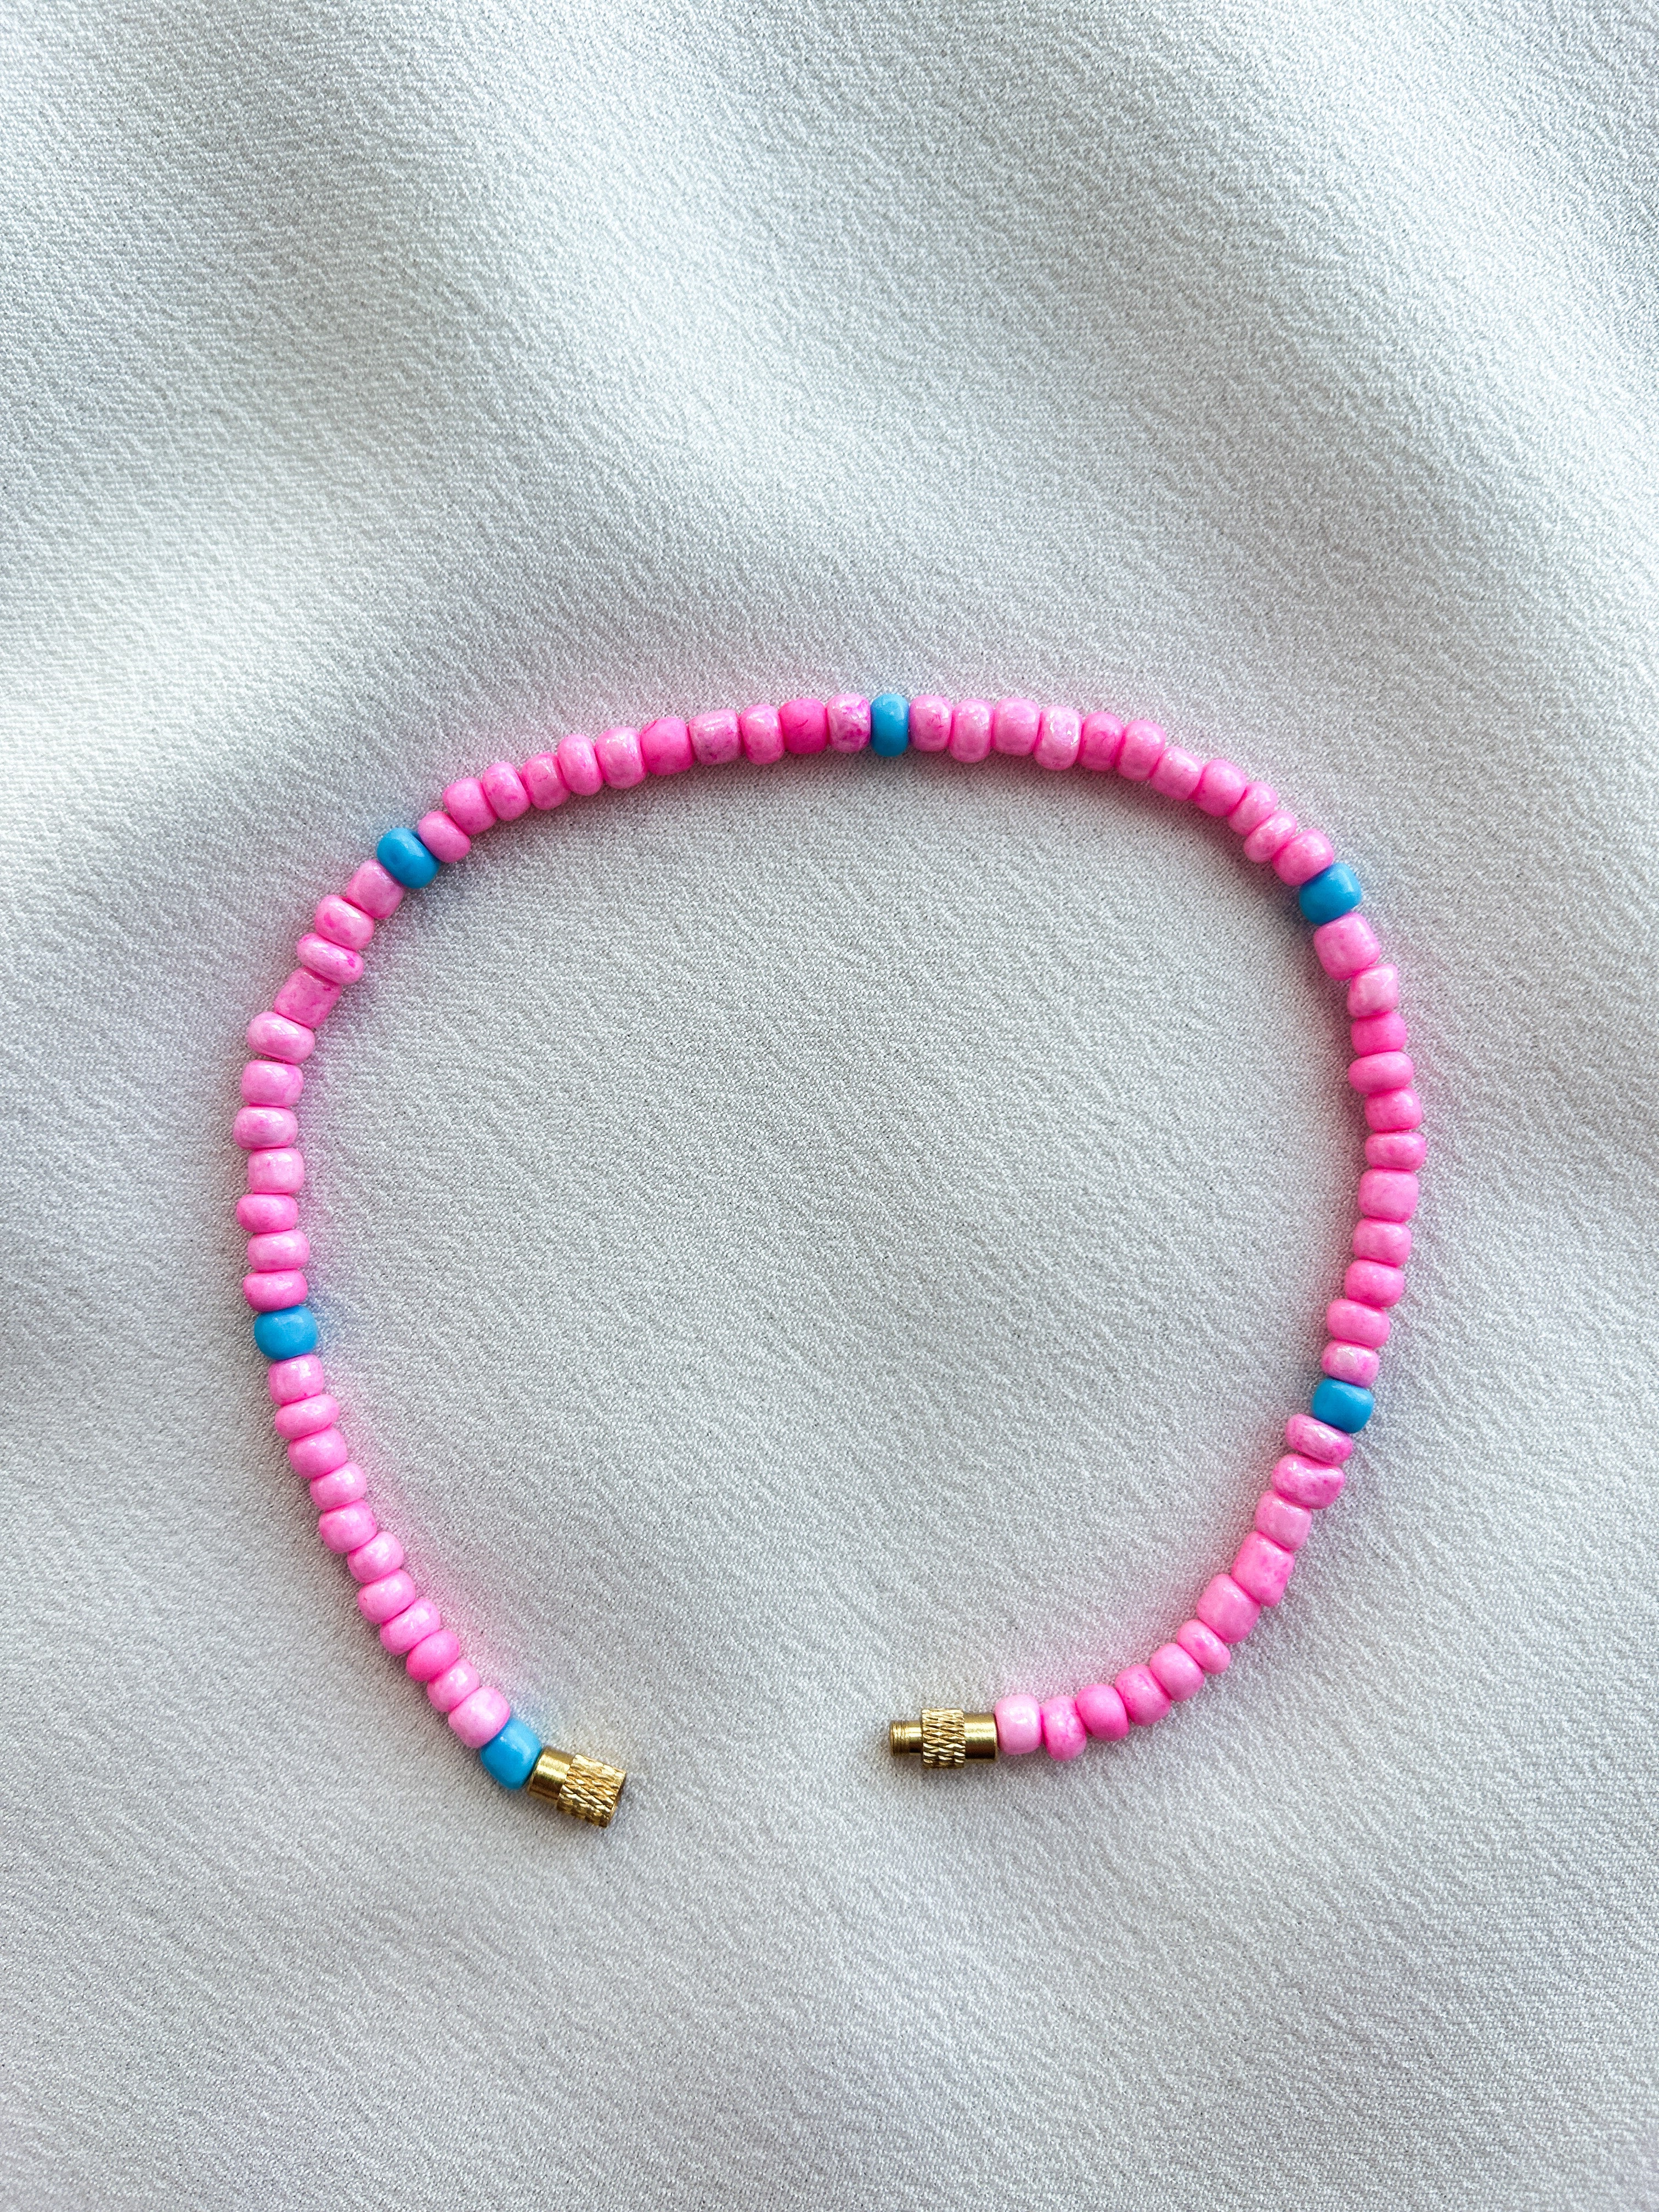 [THE ELEVEN] Anklet/Bracelet: Pink/Blue [Large Beads]